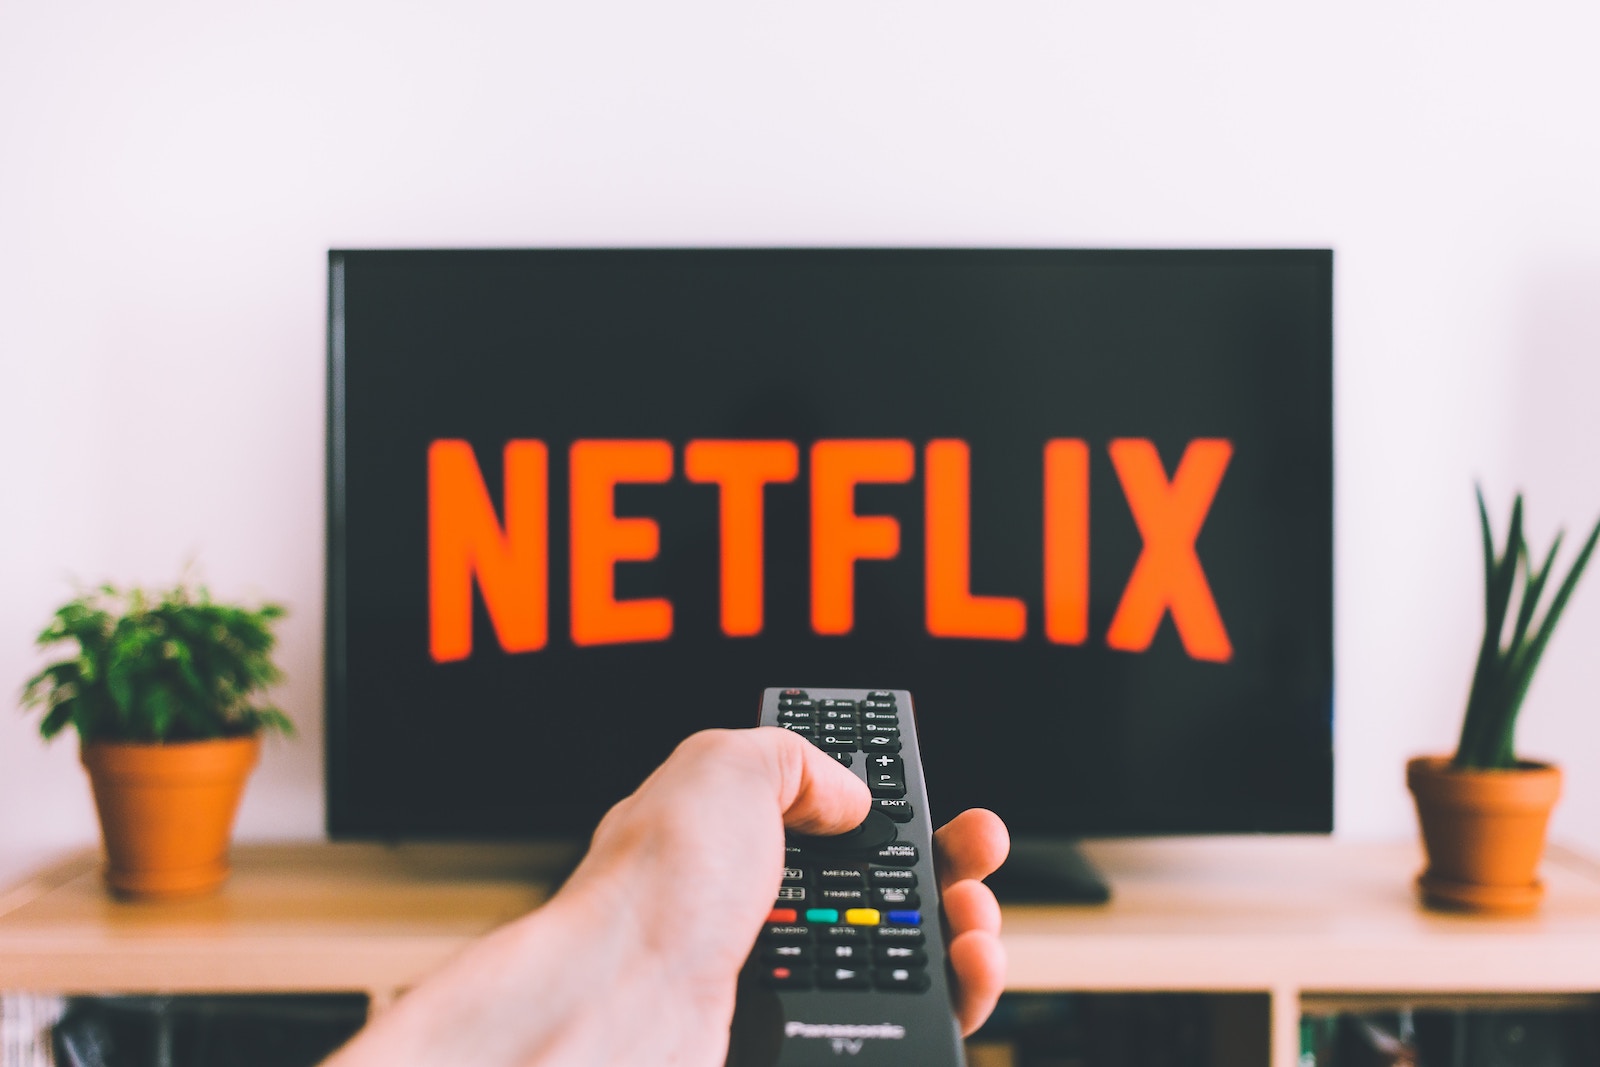 🤨 Netflix zmusyť raz na misjać pidključatysja do osnovnogo Wi-Fi